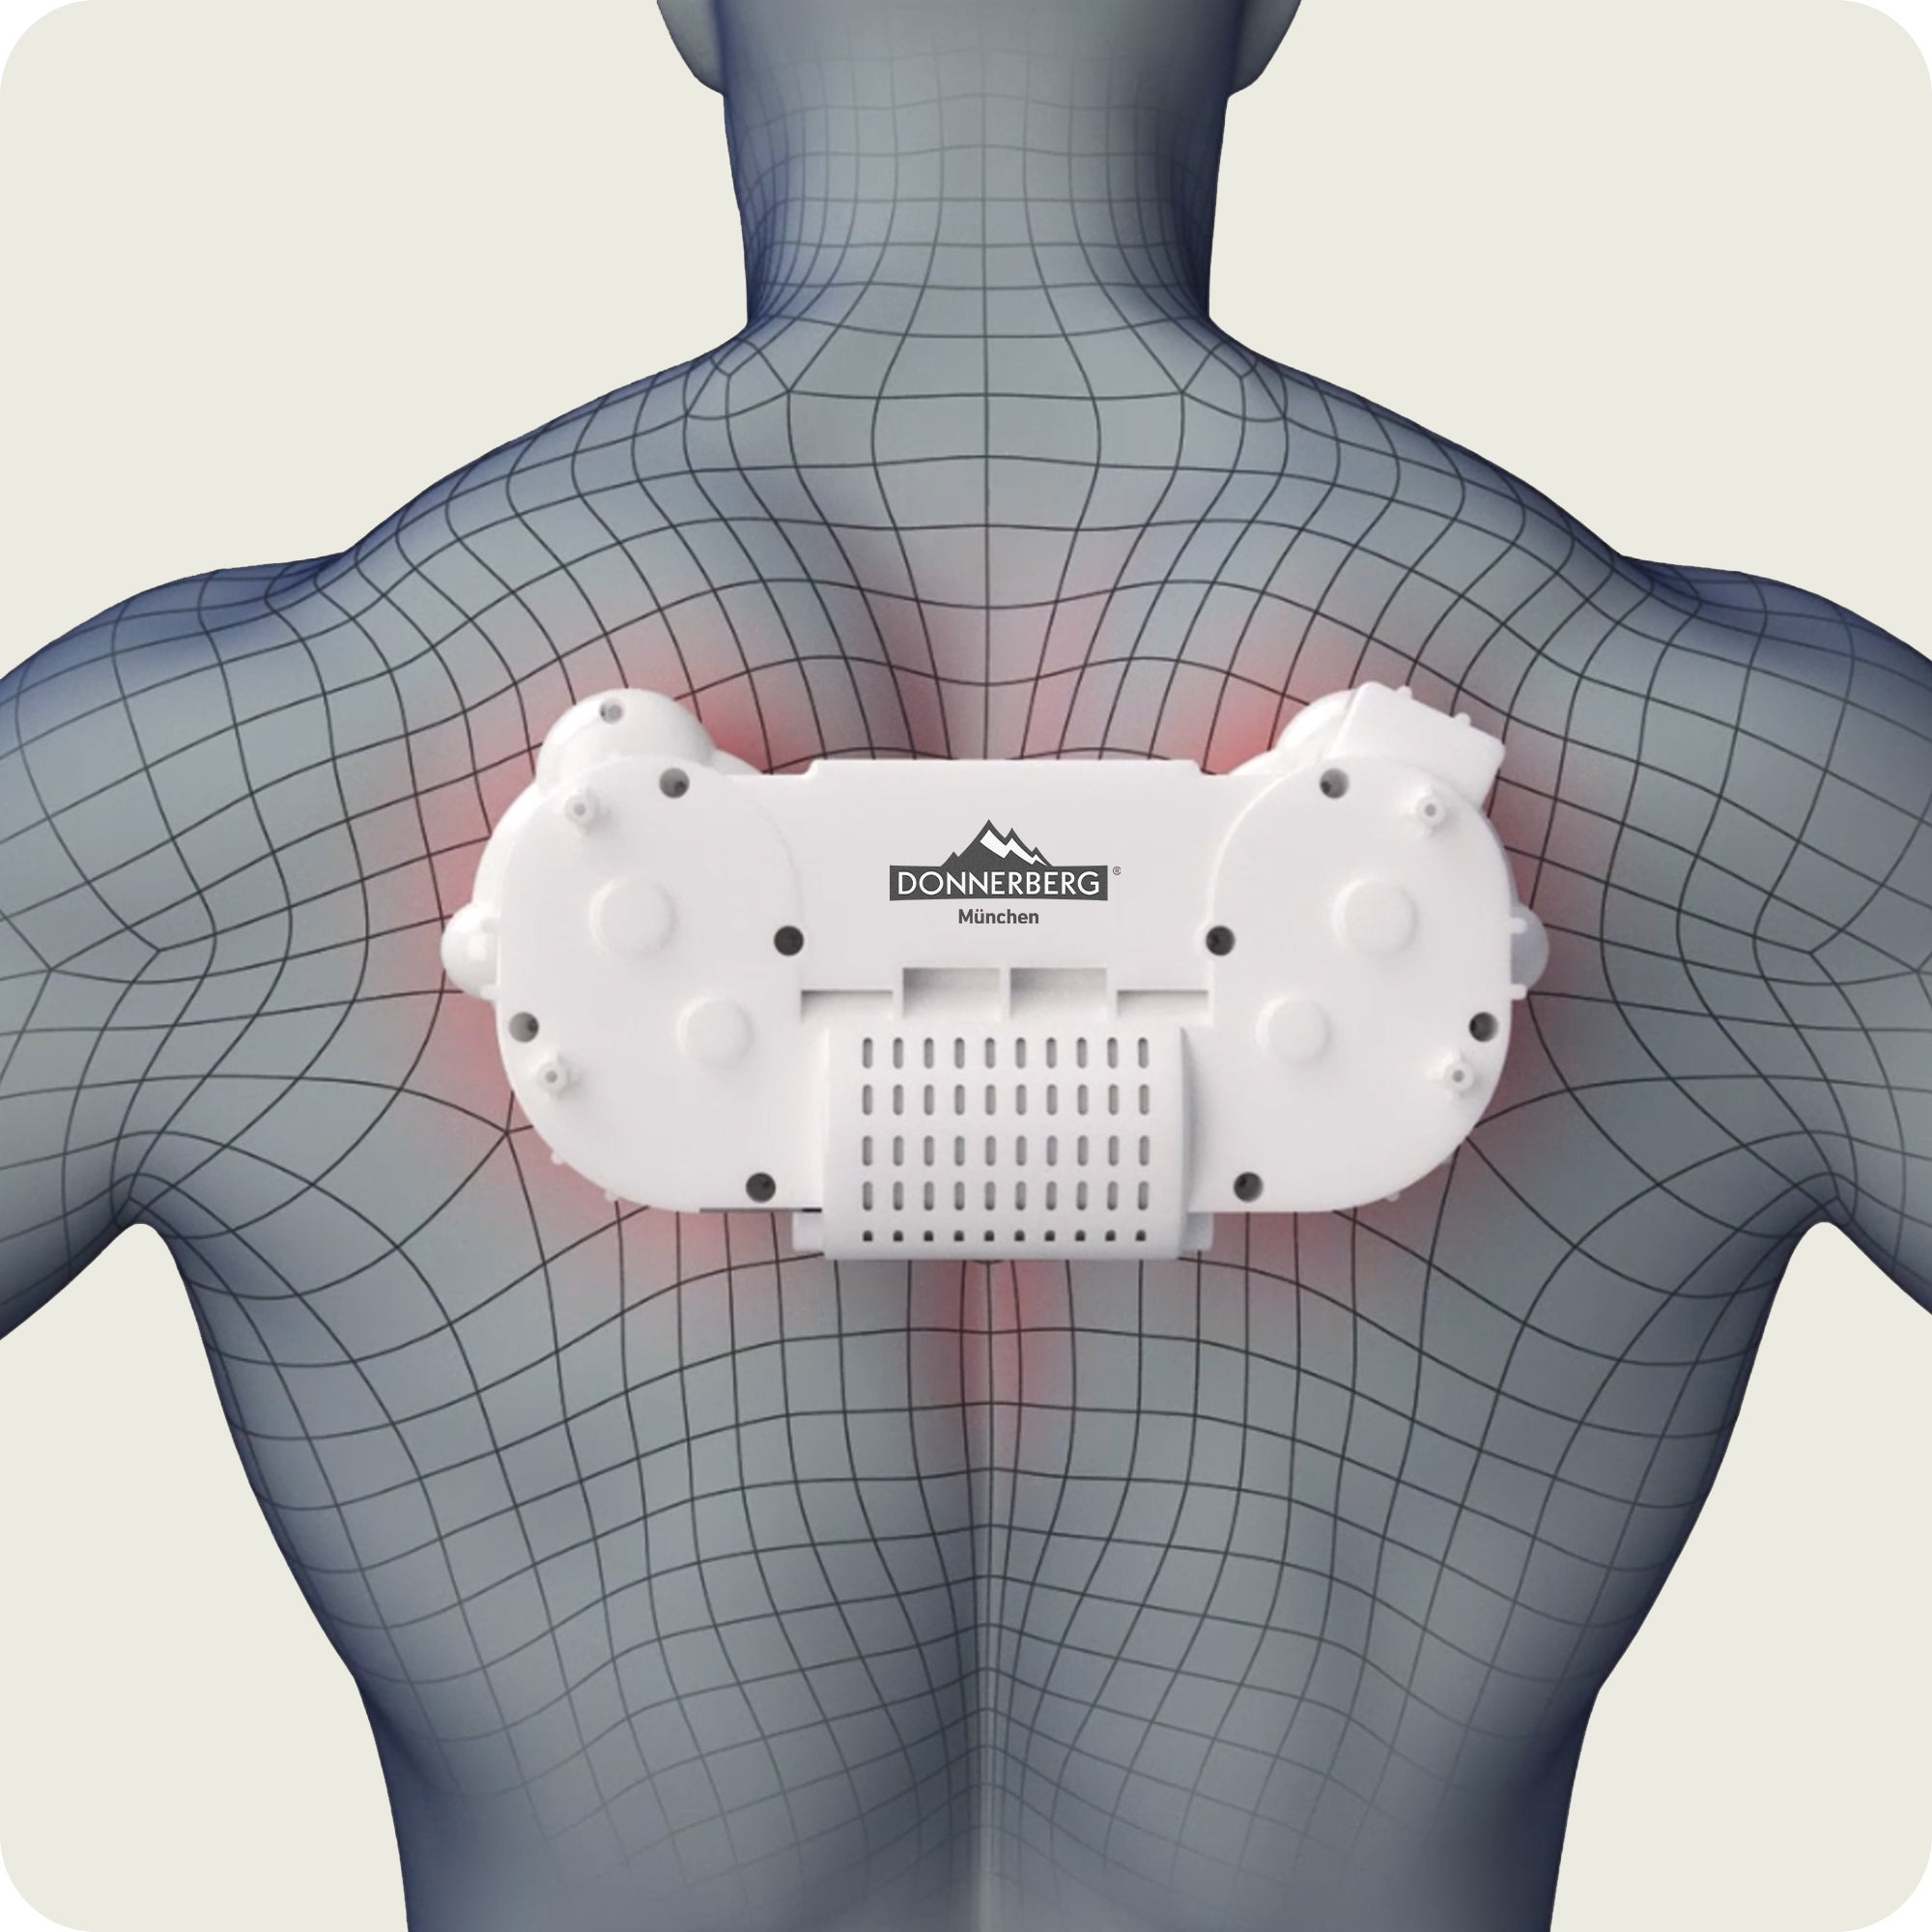 Der Kraftmotor des Nackenmassagegeräts mit Akku steht für Langlebigkeit und Ausdauer